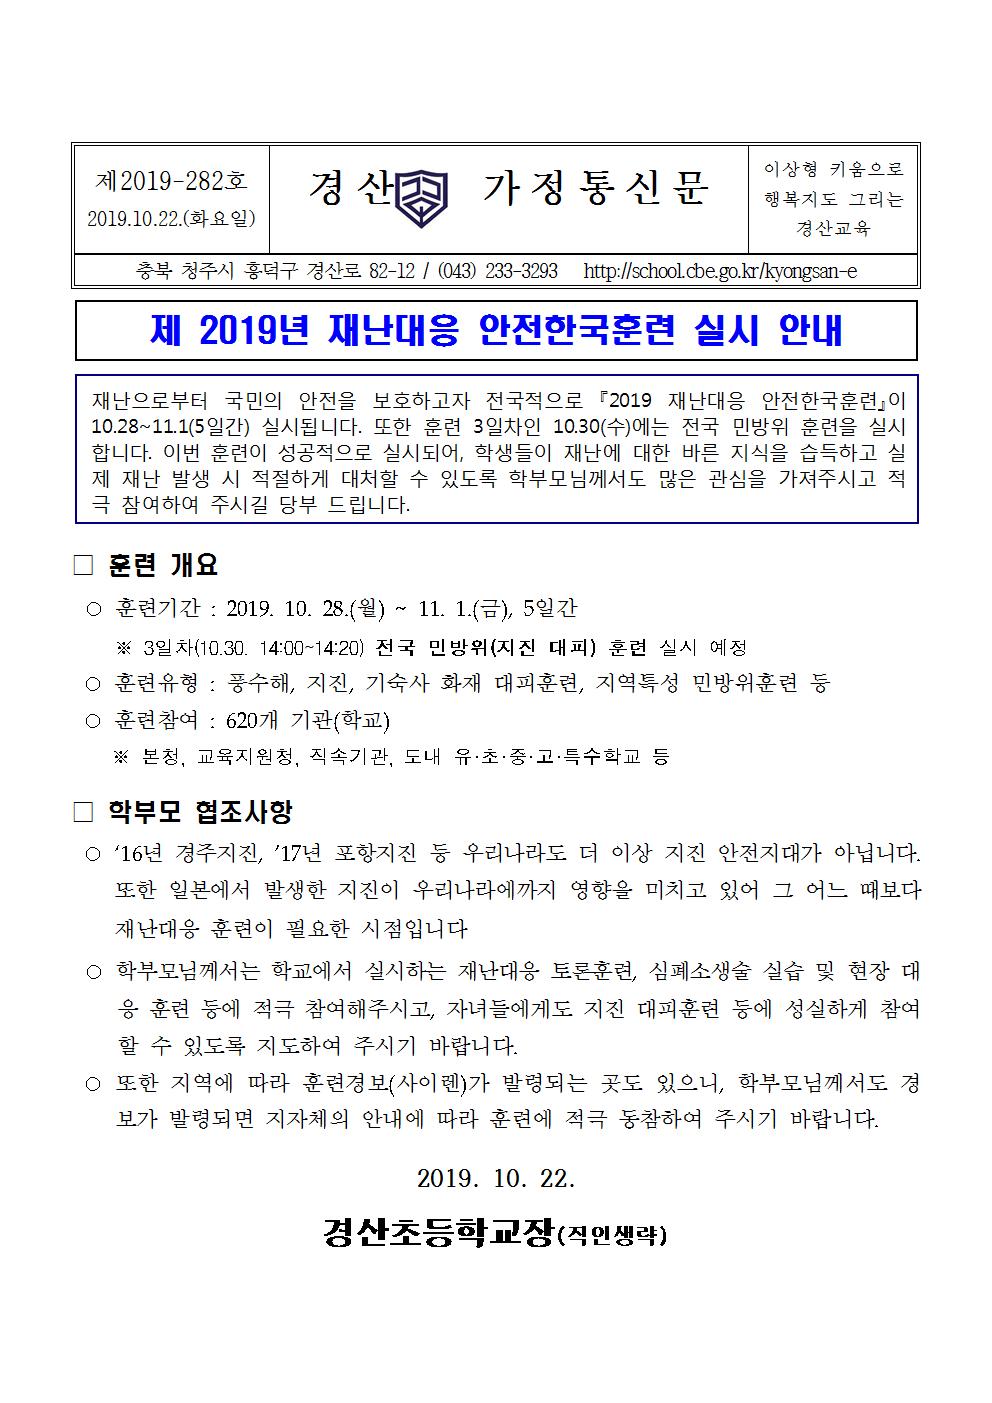 2019 재난대응안전한국 훈련 가정통신문001